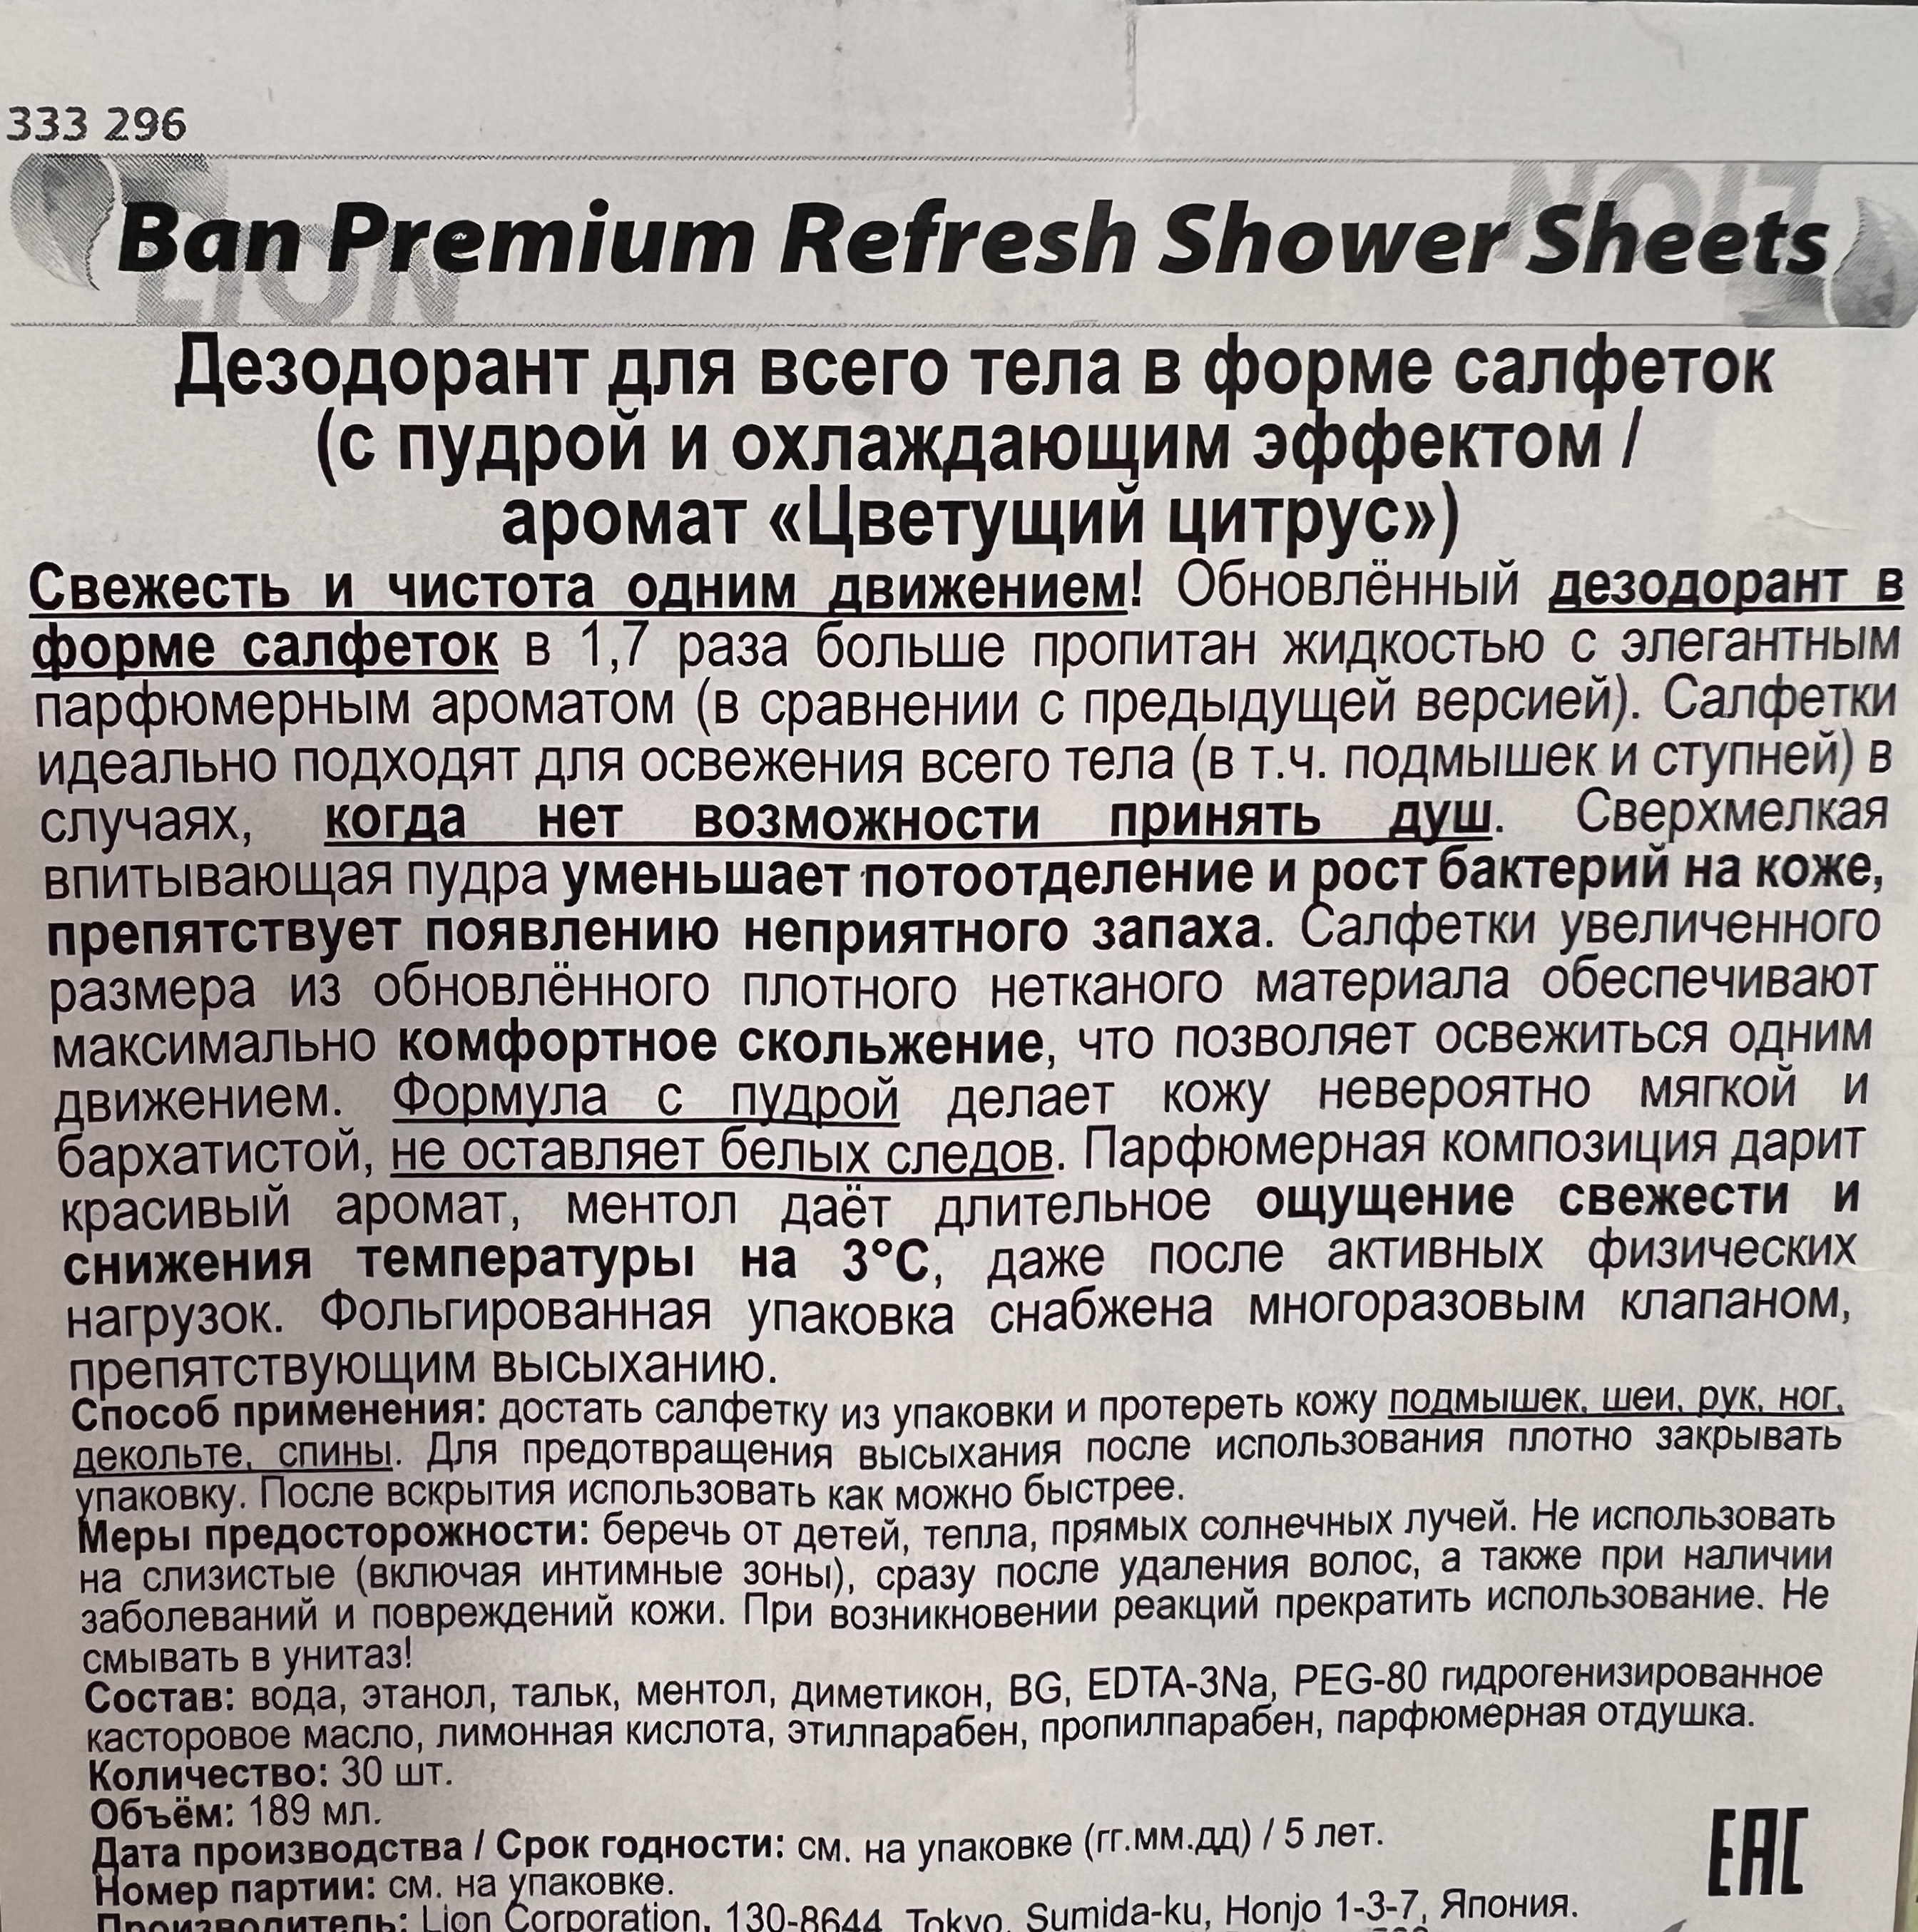 Дезодорант для всего тела в форме салфеток LION Ban Premium Refresh Shower Sheets (с пудрой и охлаждающим эффектом / аромат Цветущий цитрус) 30 шт. / 24